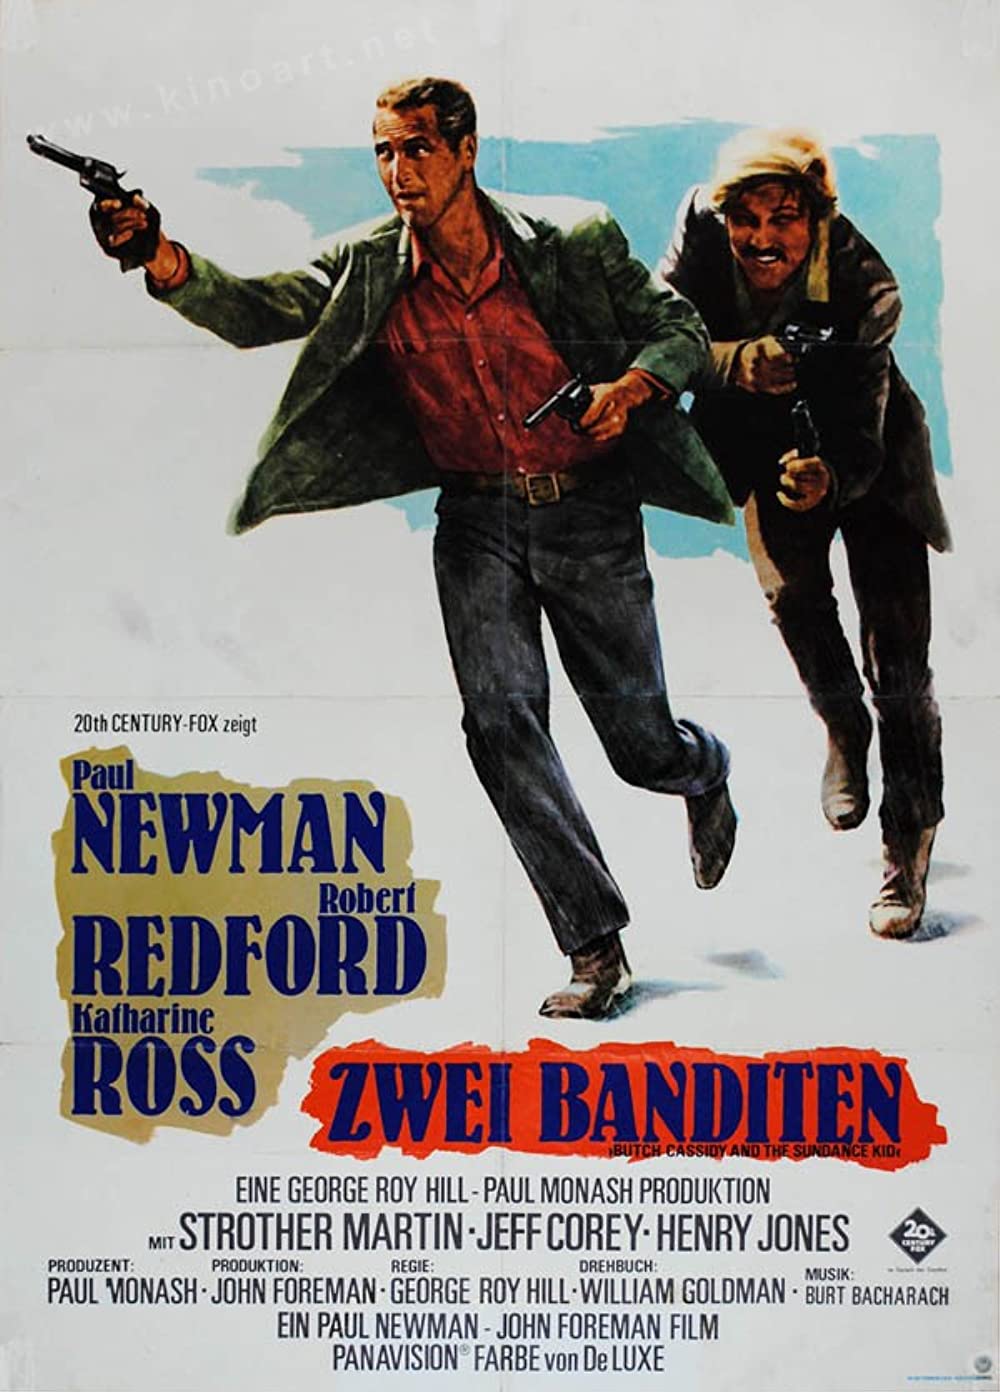 Filmbeschreibung zu Butch Cassidy and the Sundance Kid